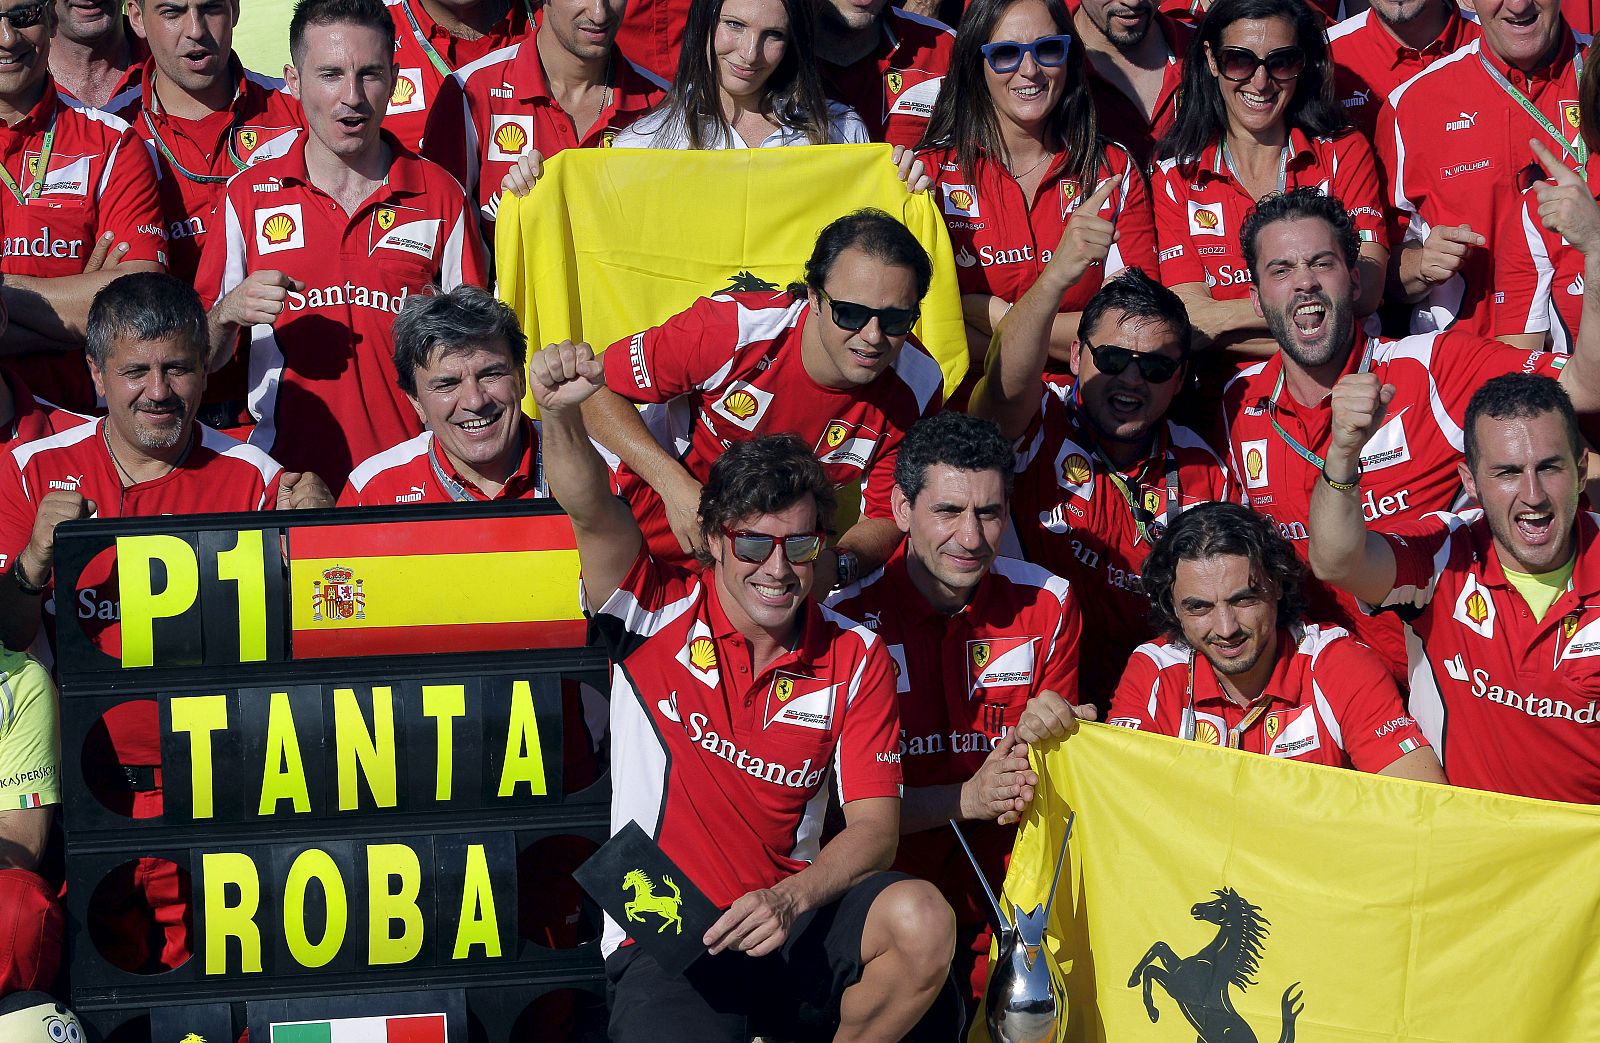 El piloto de Ferrari, Fernando Alonso, celebra junto a su equipo la victoria en el Gran Premio de Europa